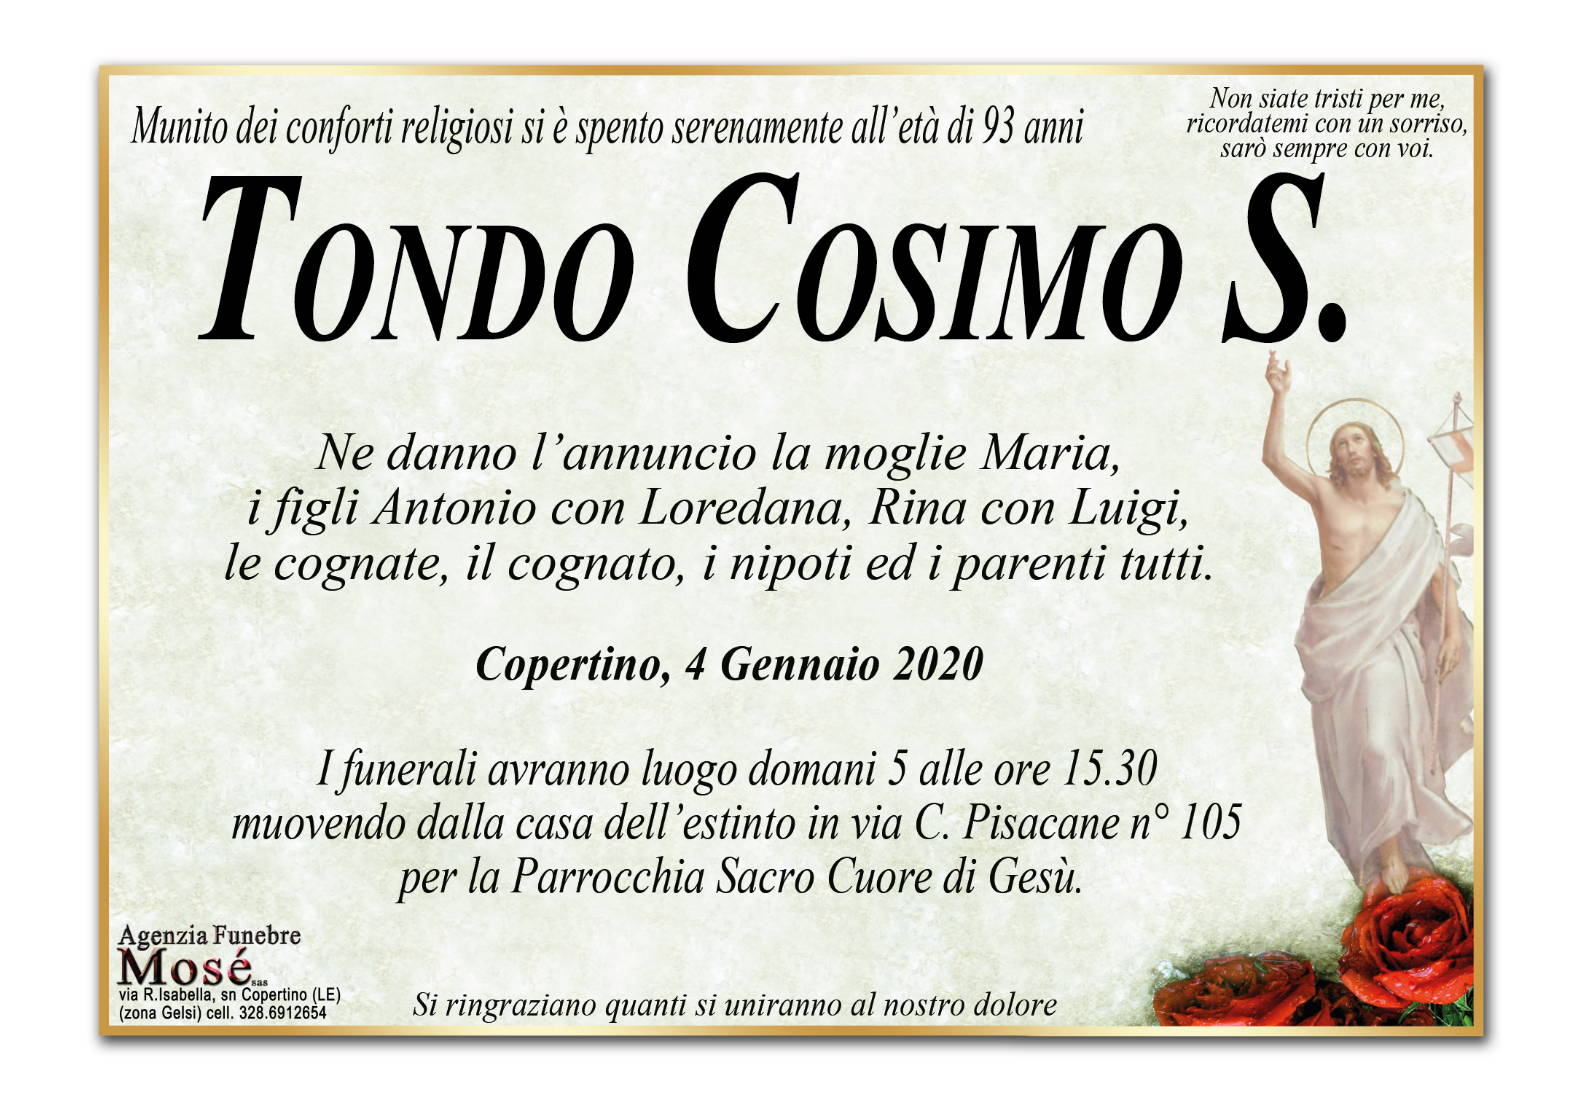 Cosimo Salvatore Tondo